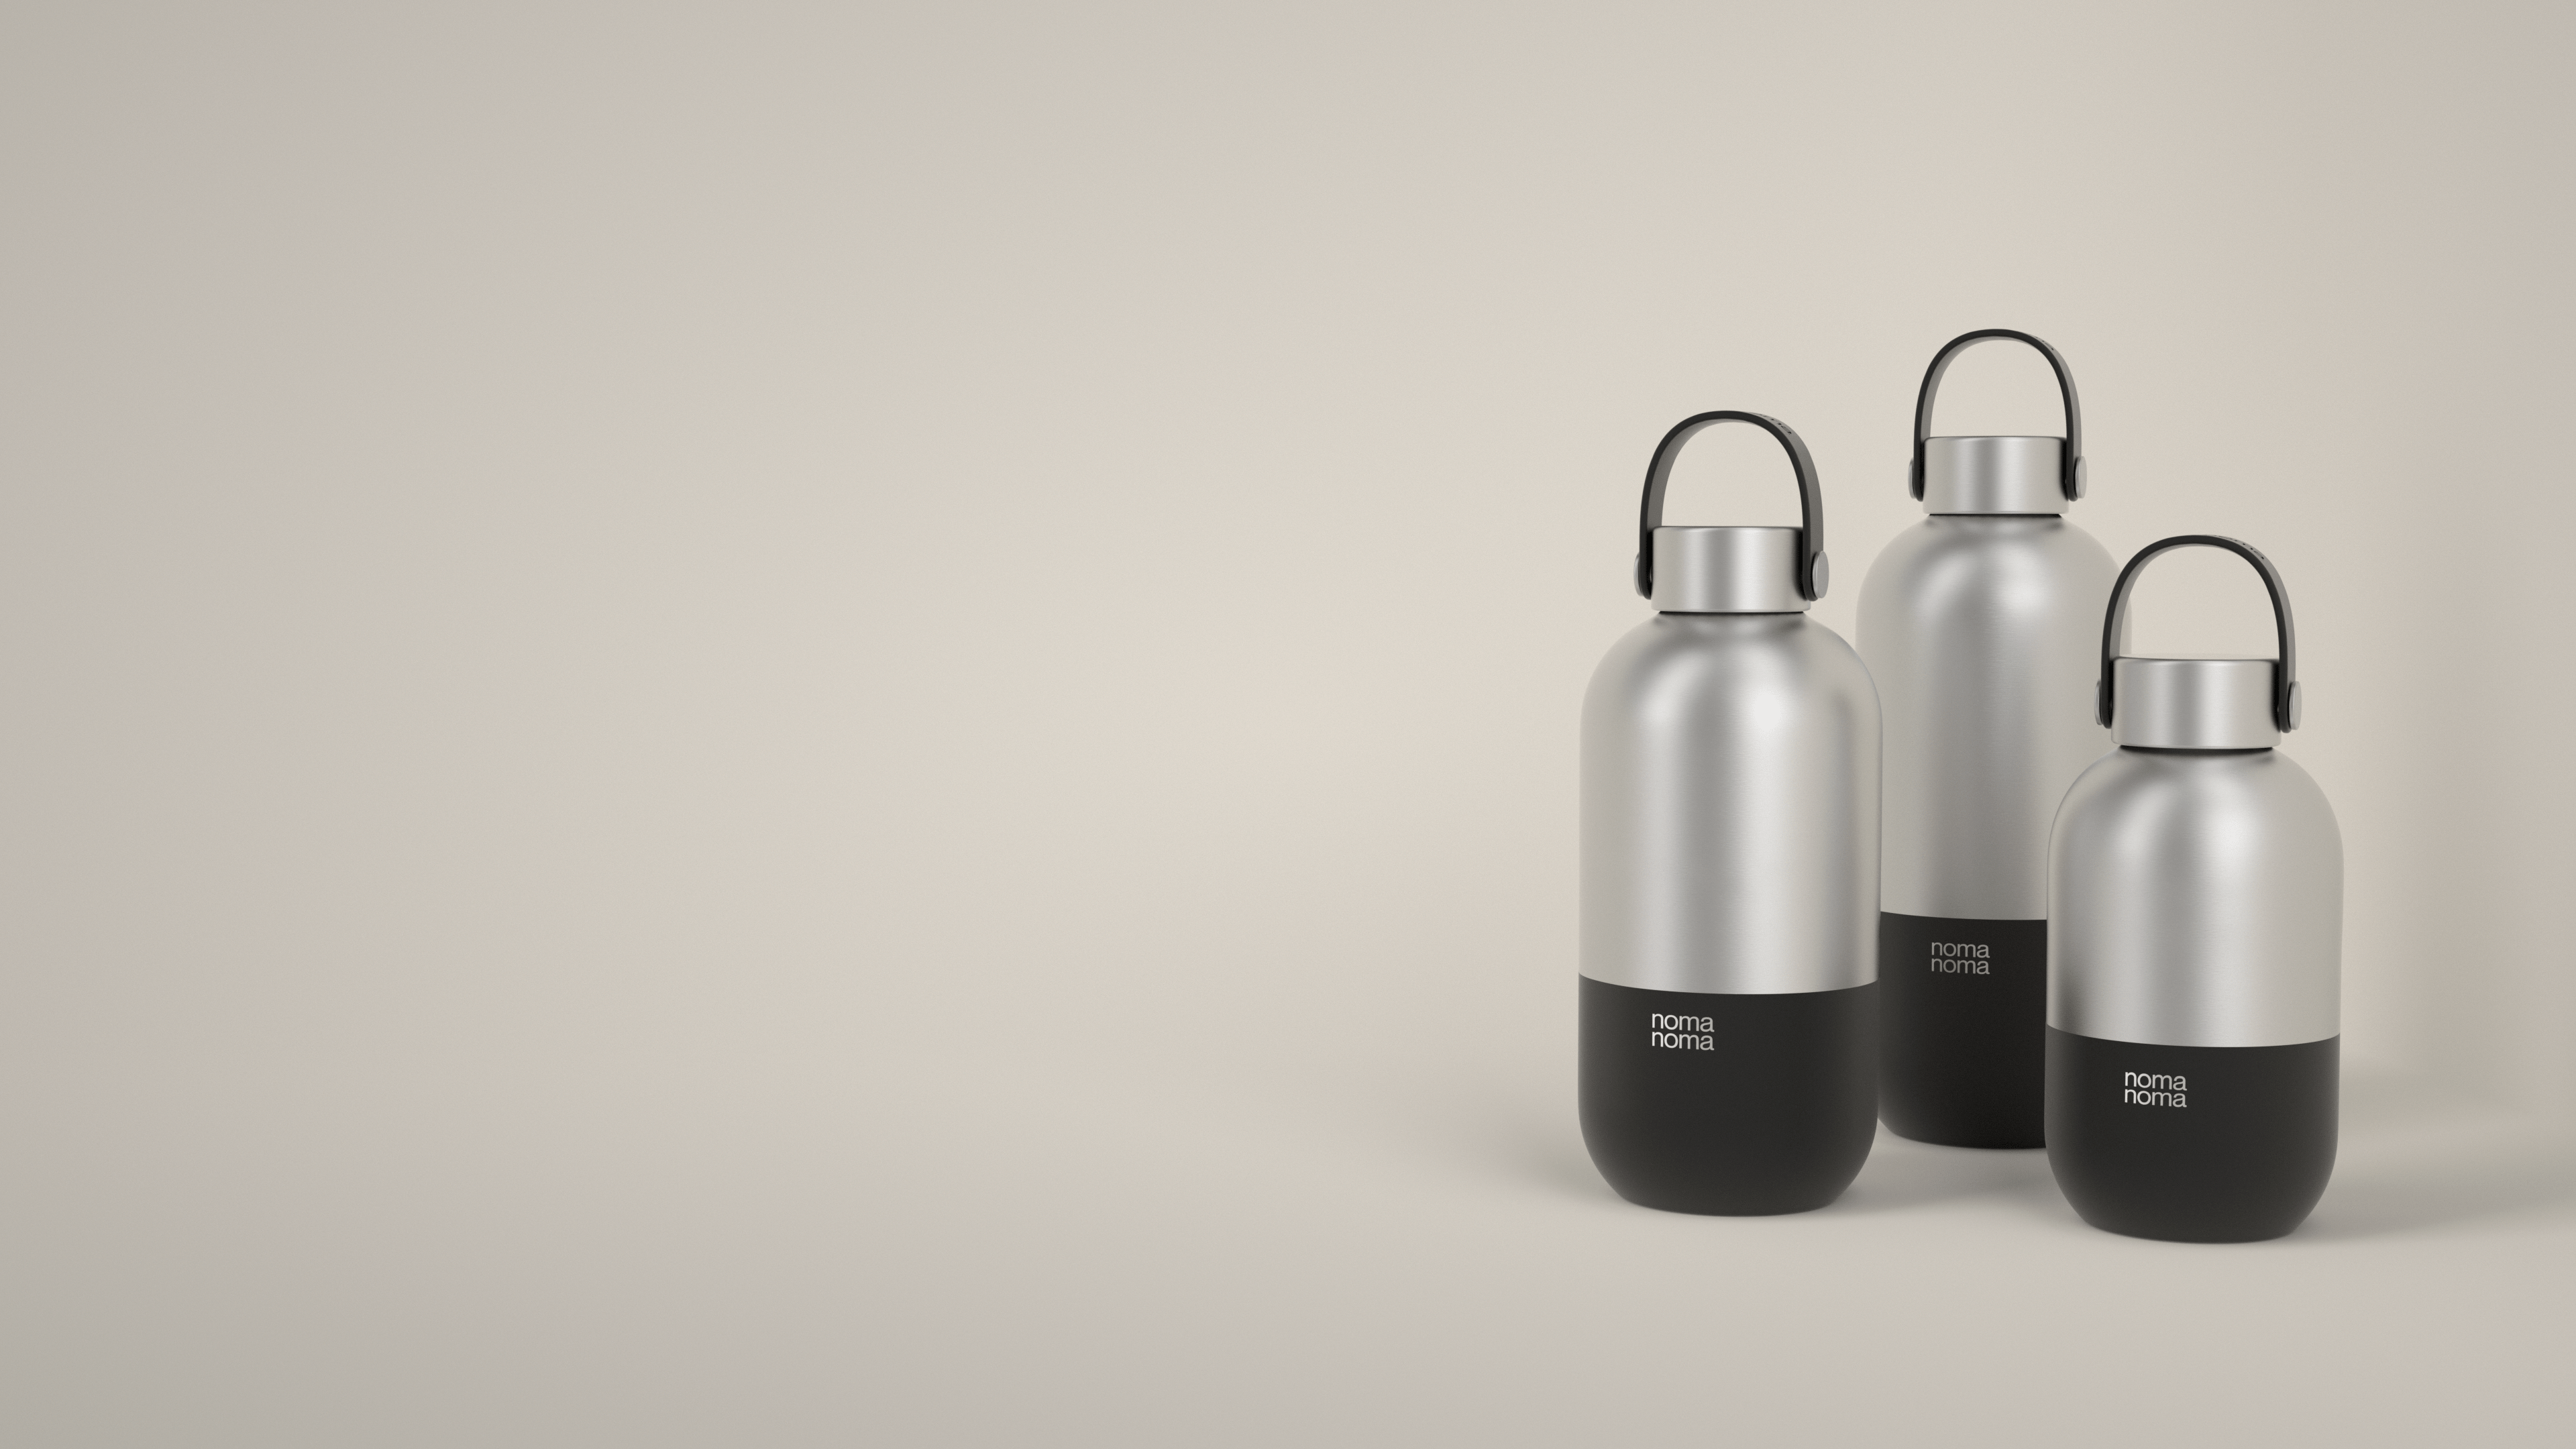 Die schwarze Trinkflasche von noma noma gibt es in drei praktischen Größen.